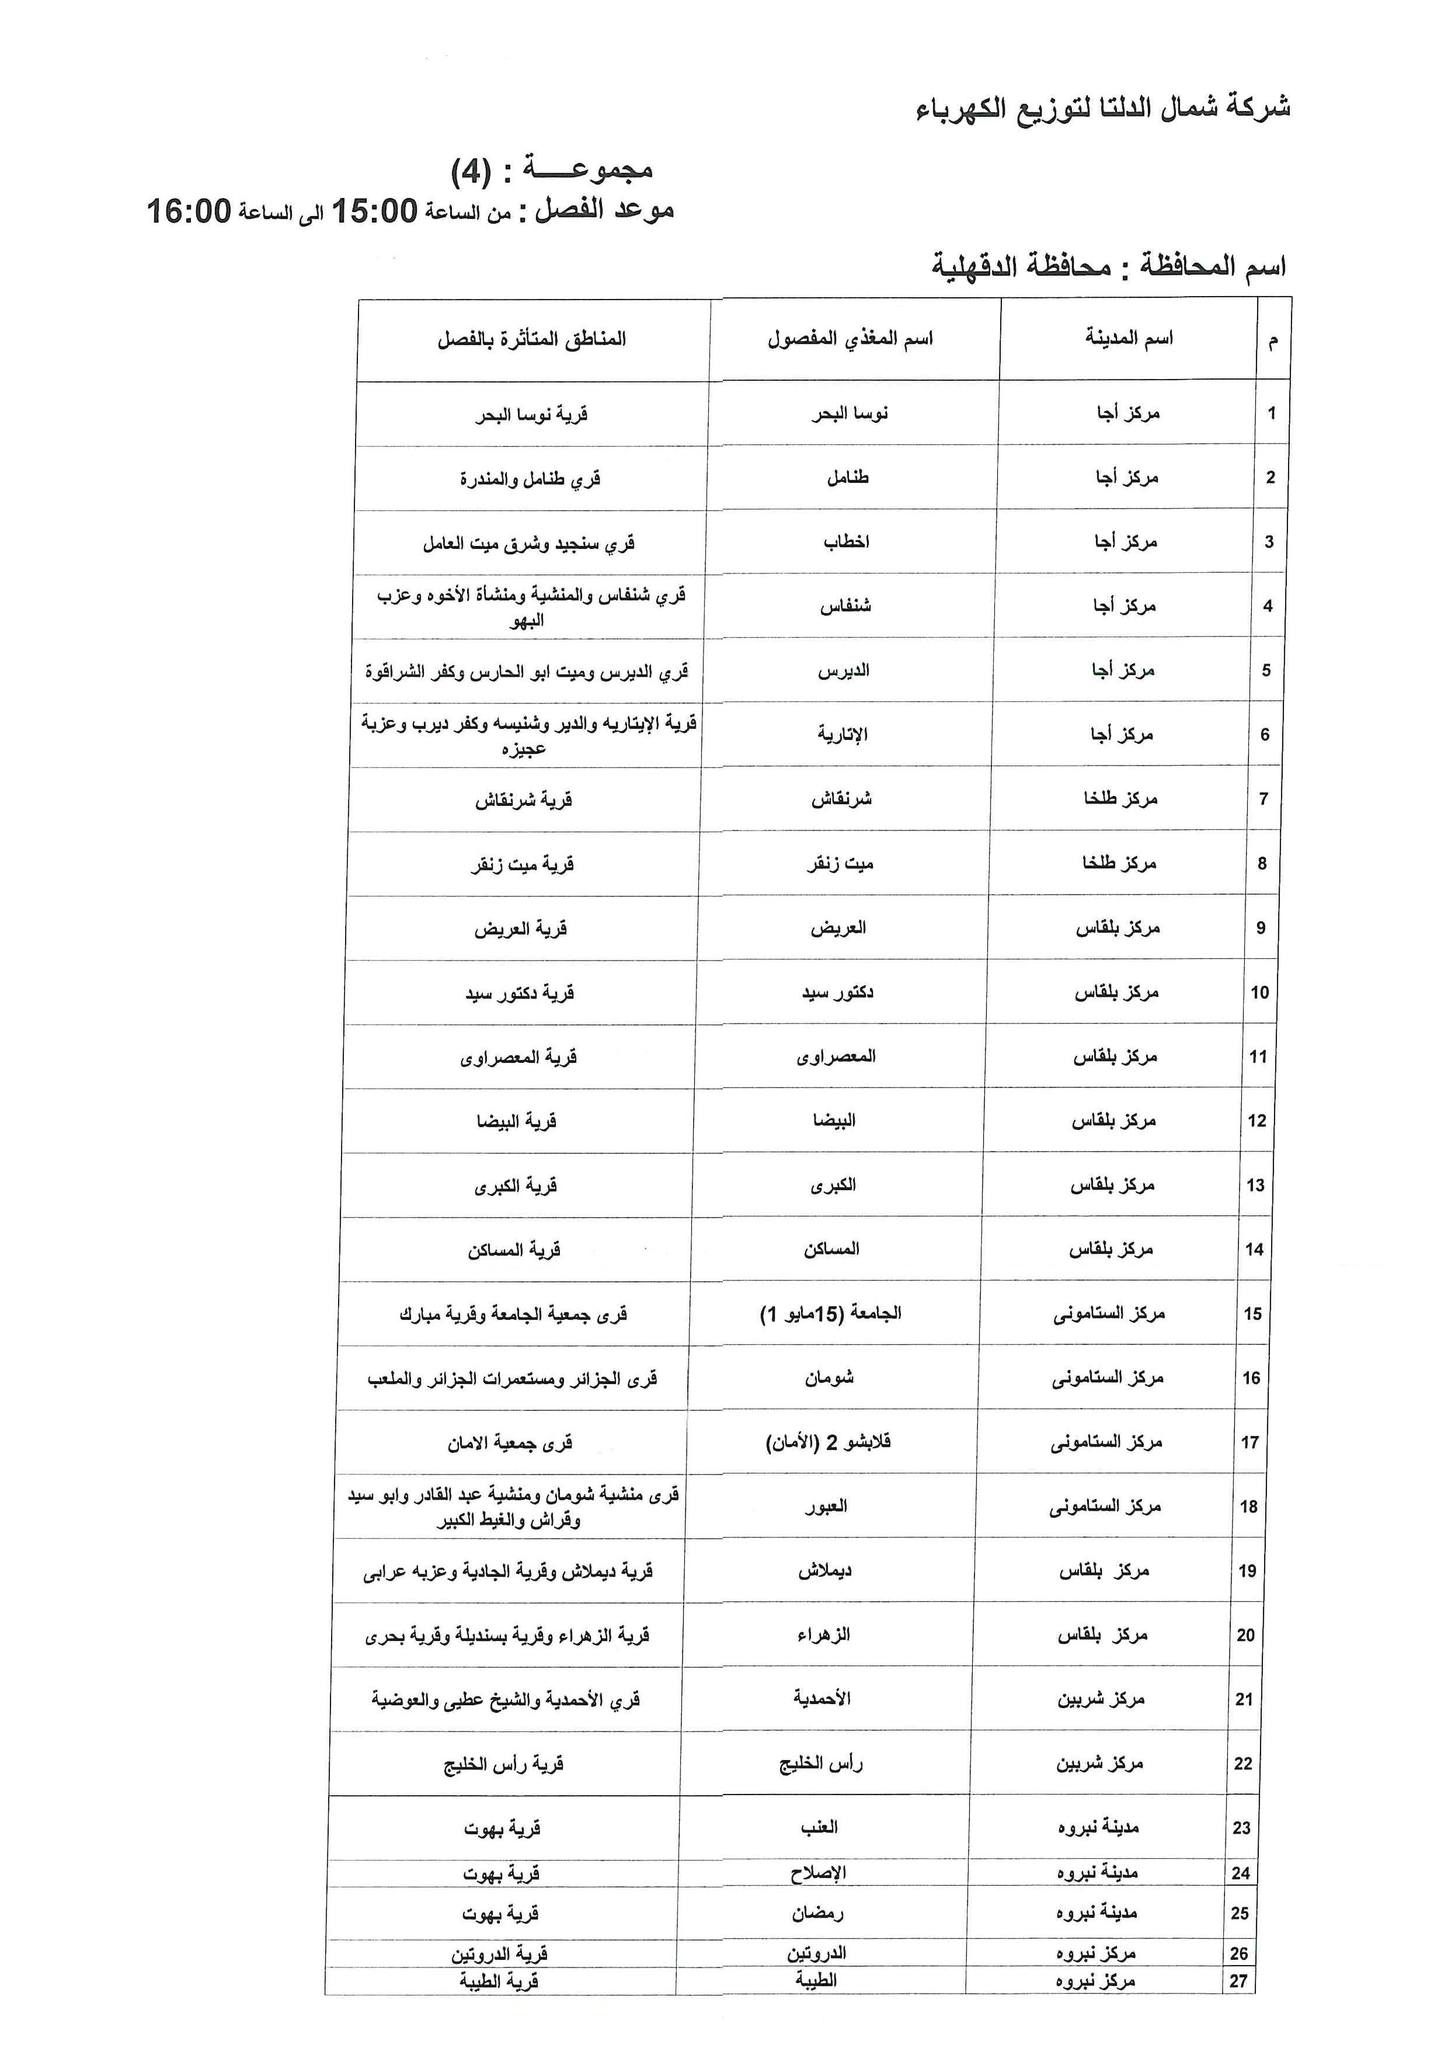 الإعلان عن خطة تخفيف أحمال الكهرباء فى محافظة الدقهلية 6